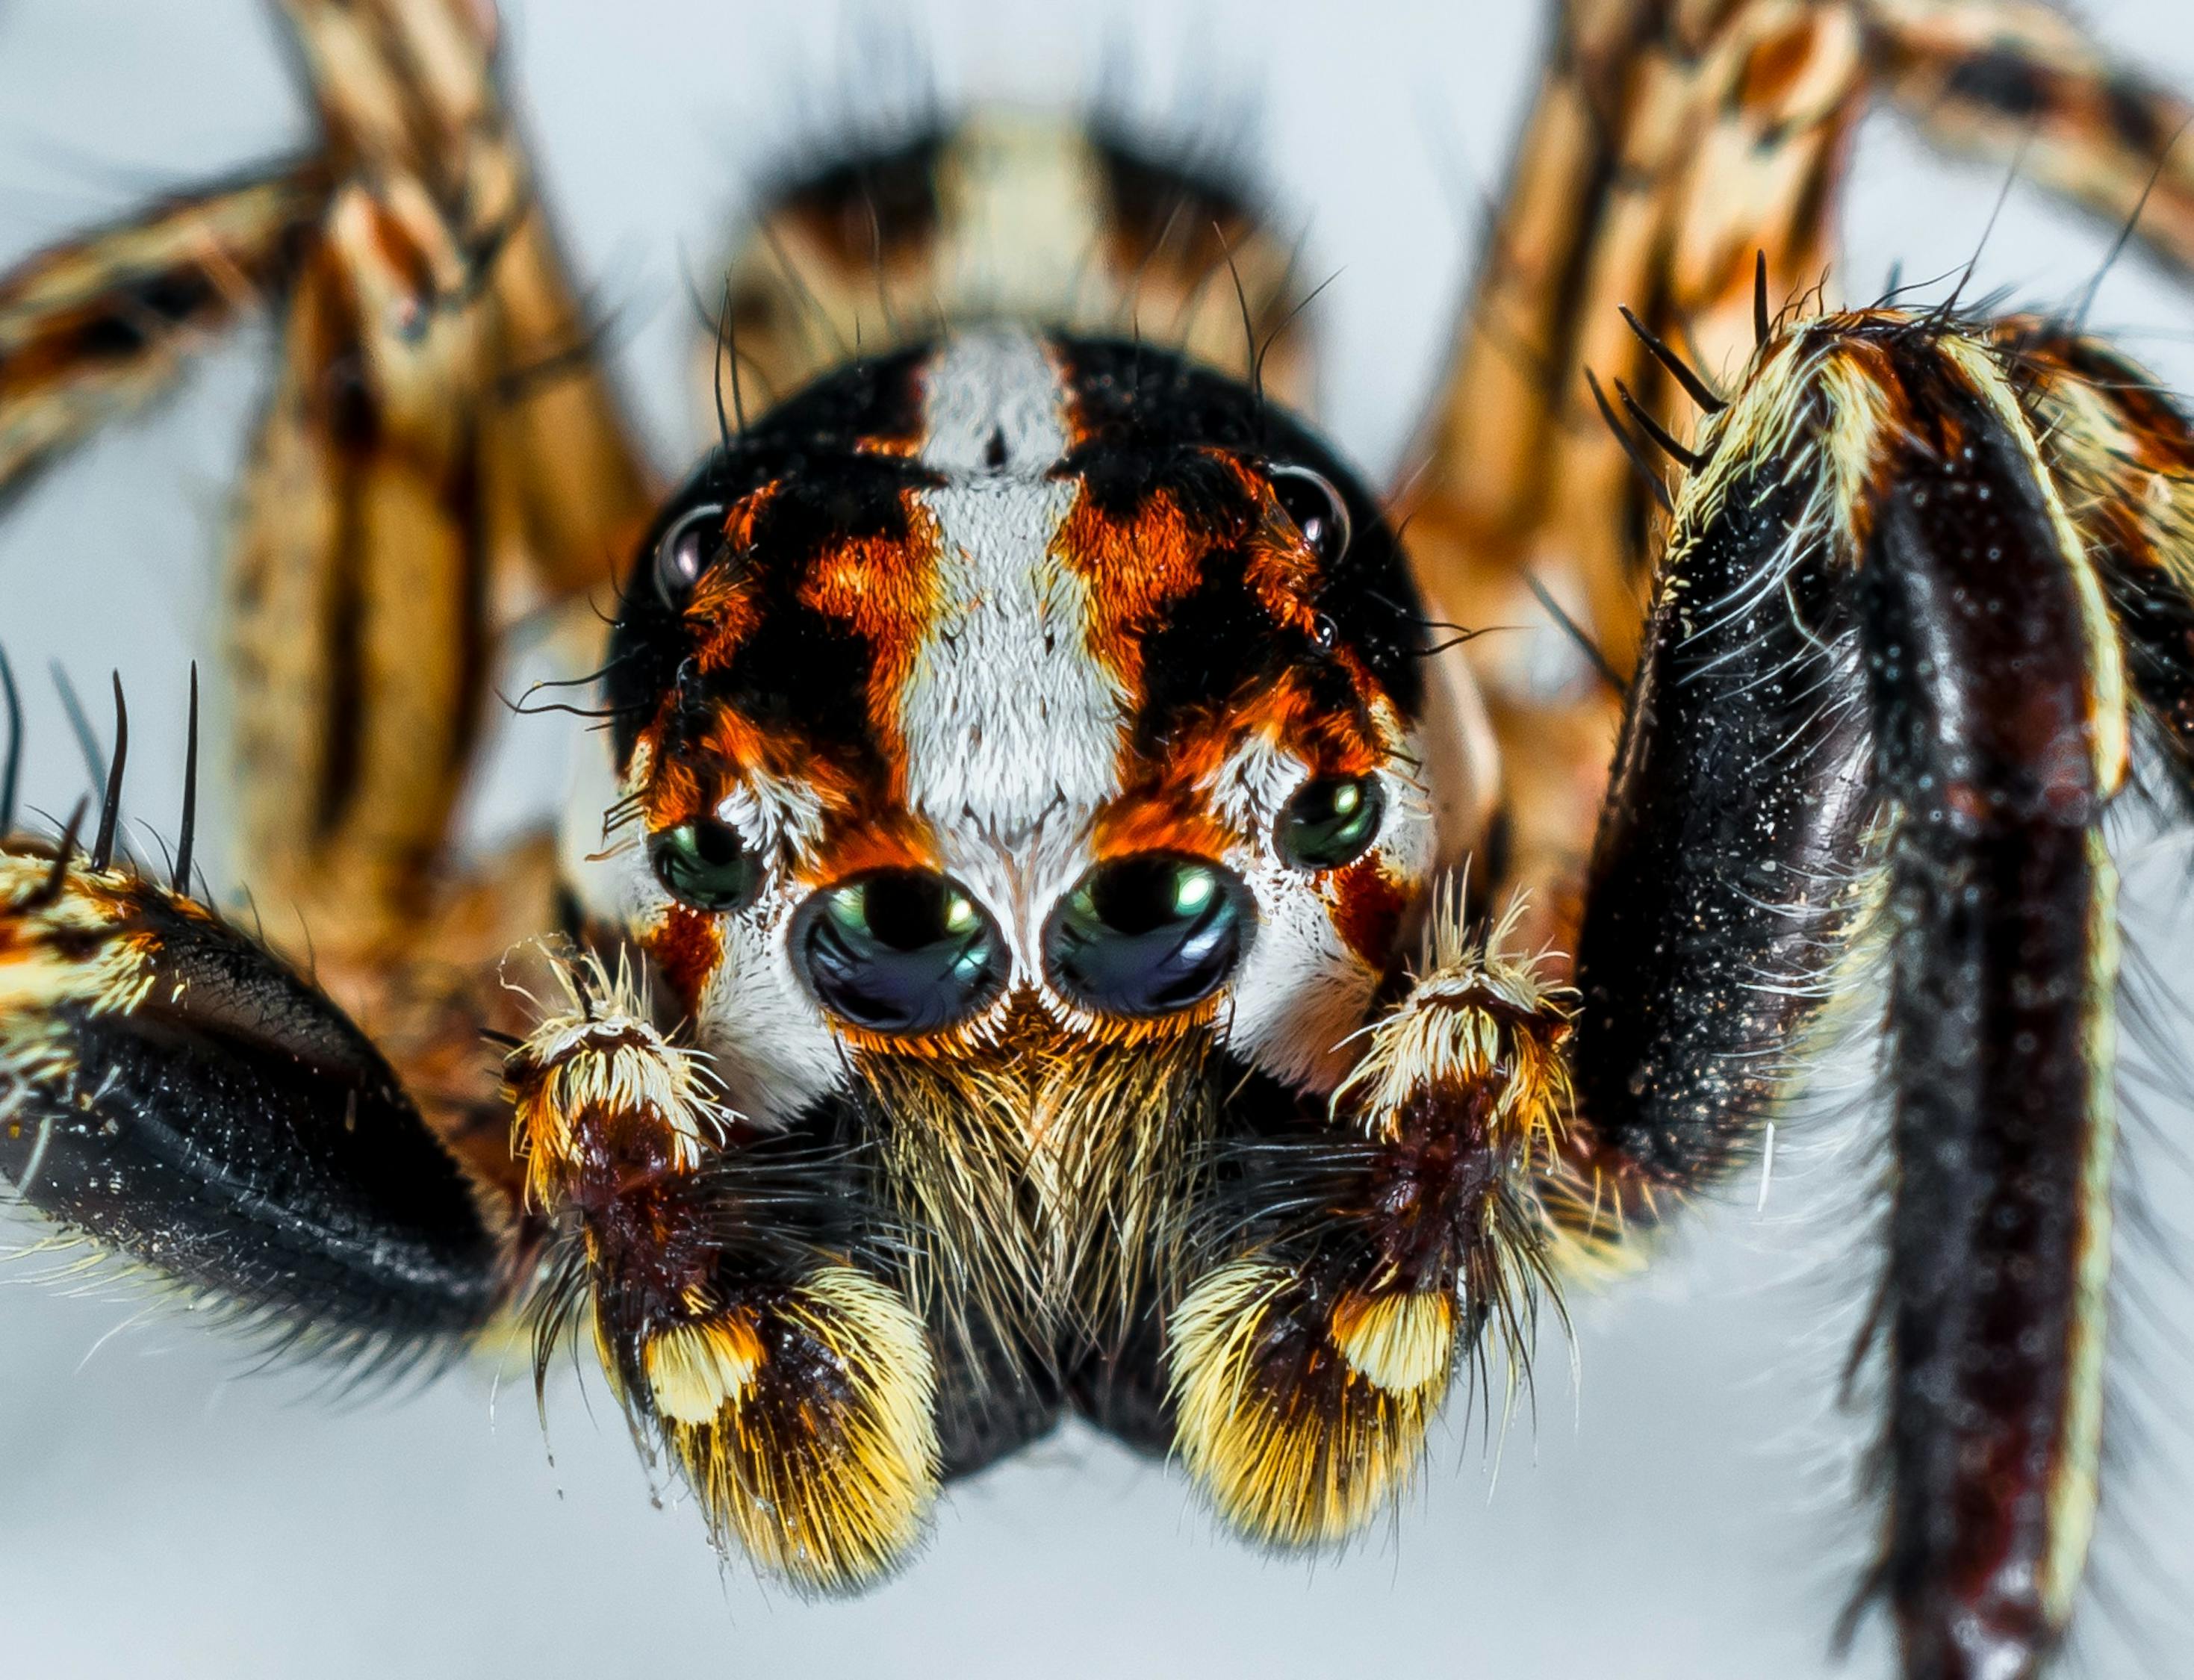 brazilian wandering spider species